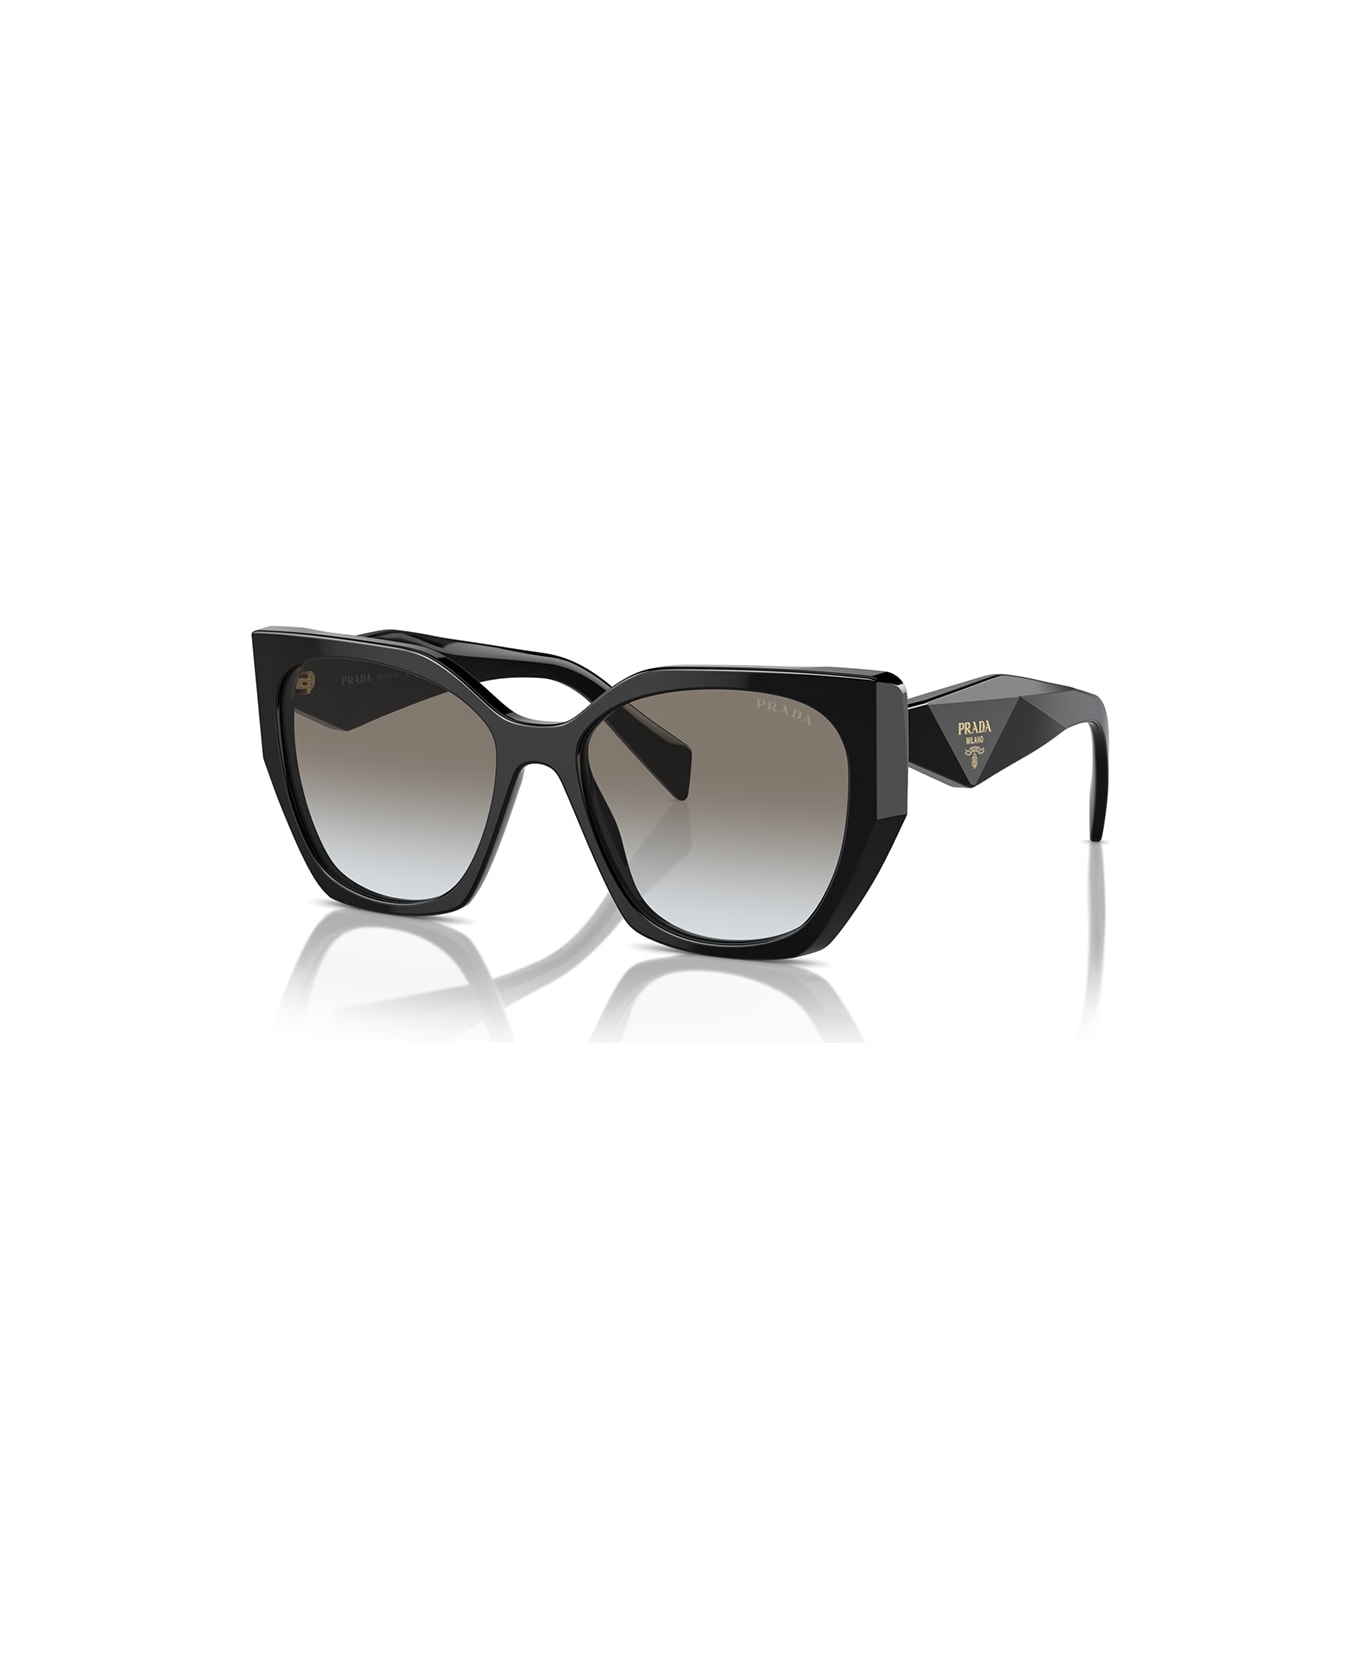 Prada Eyewear Sunglasses - Nero/Grigio サングラス